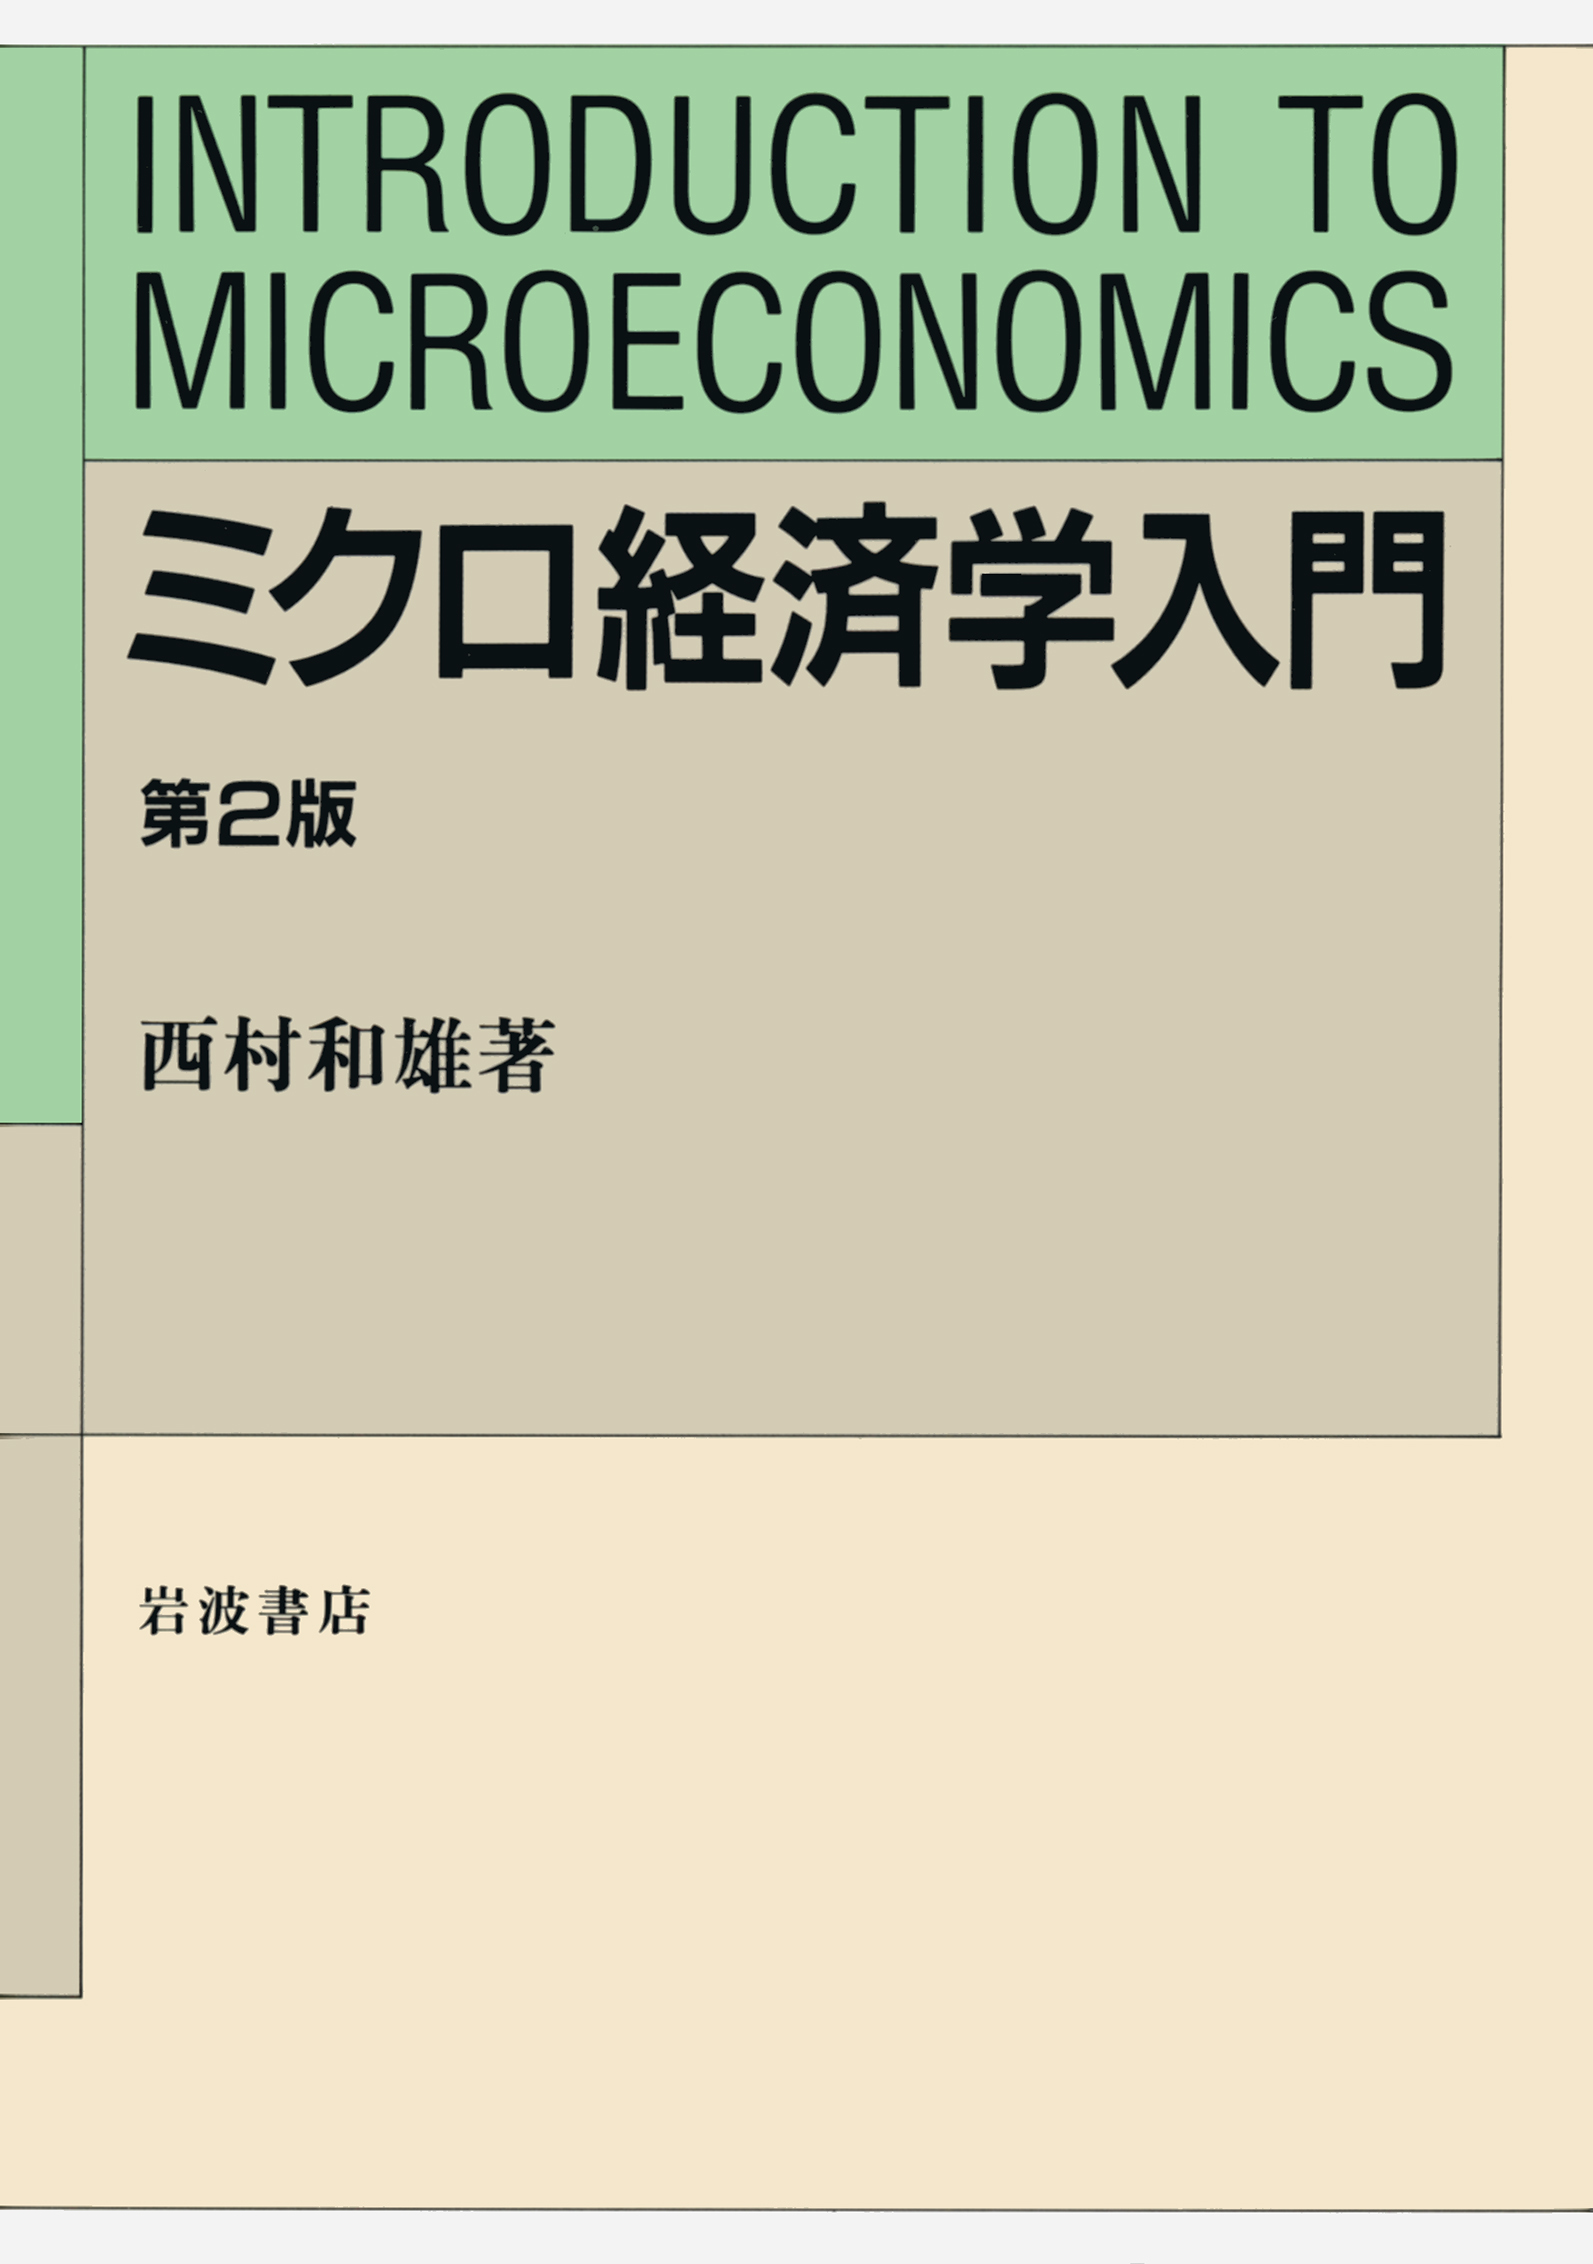 ミクロ経済学入門の商品画像